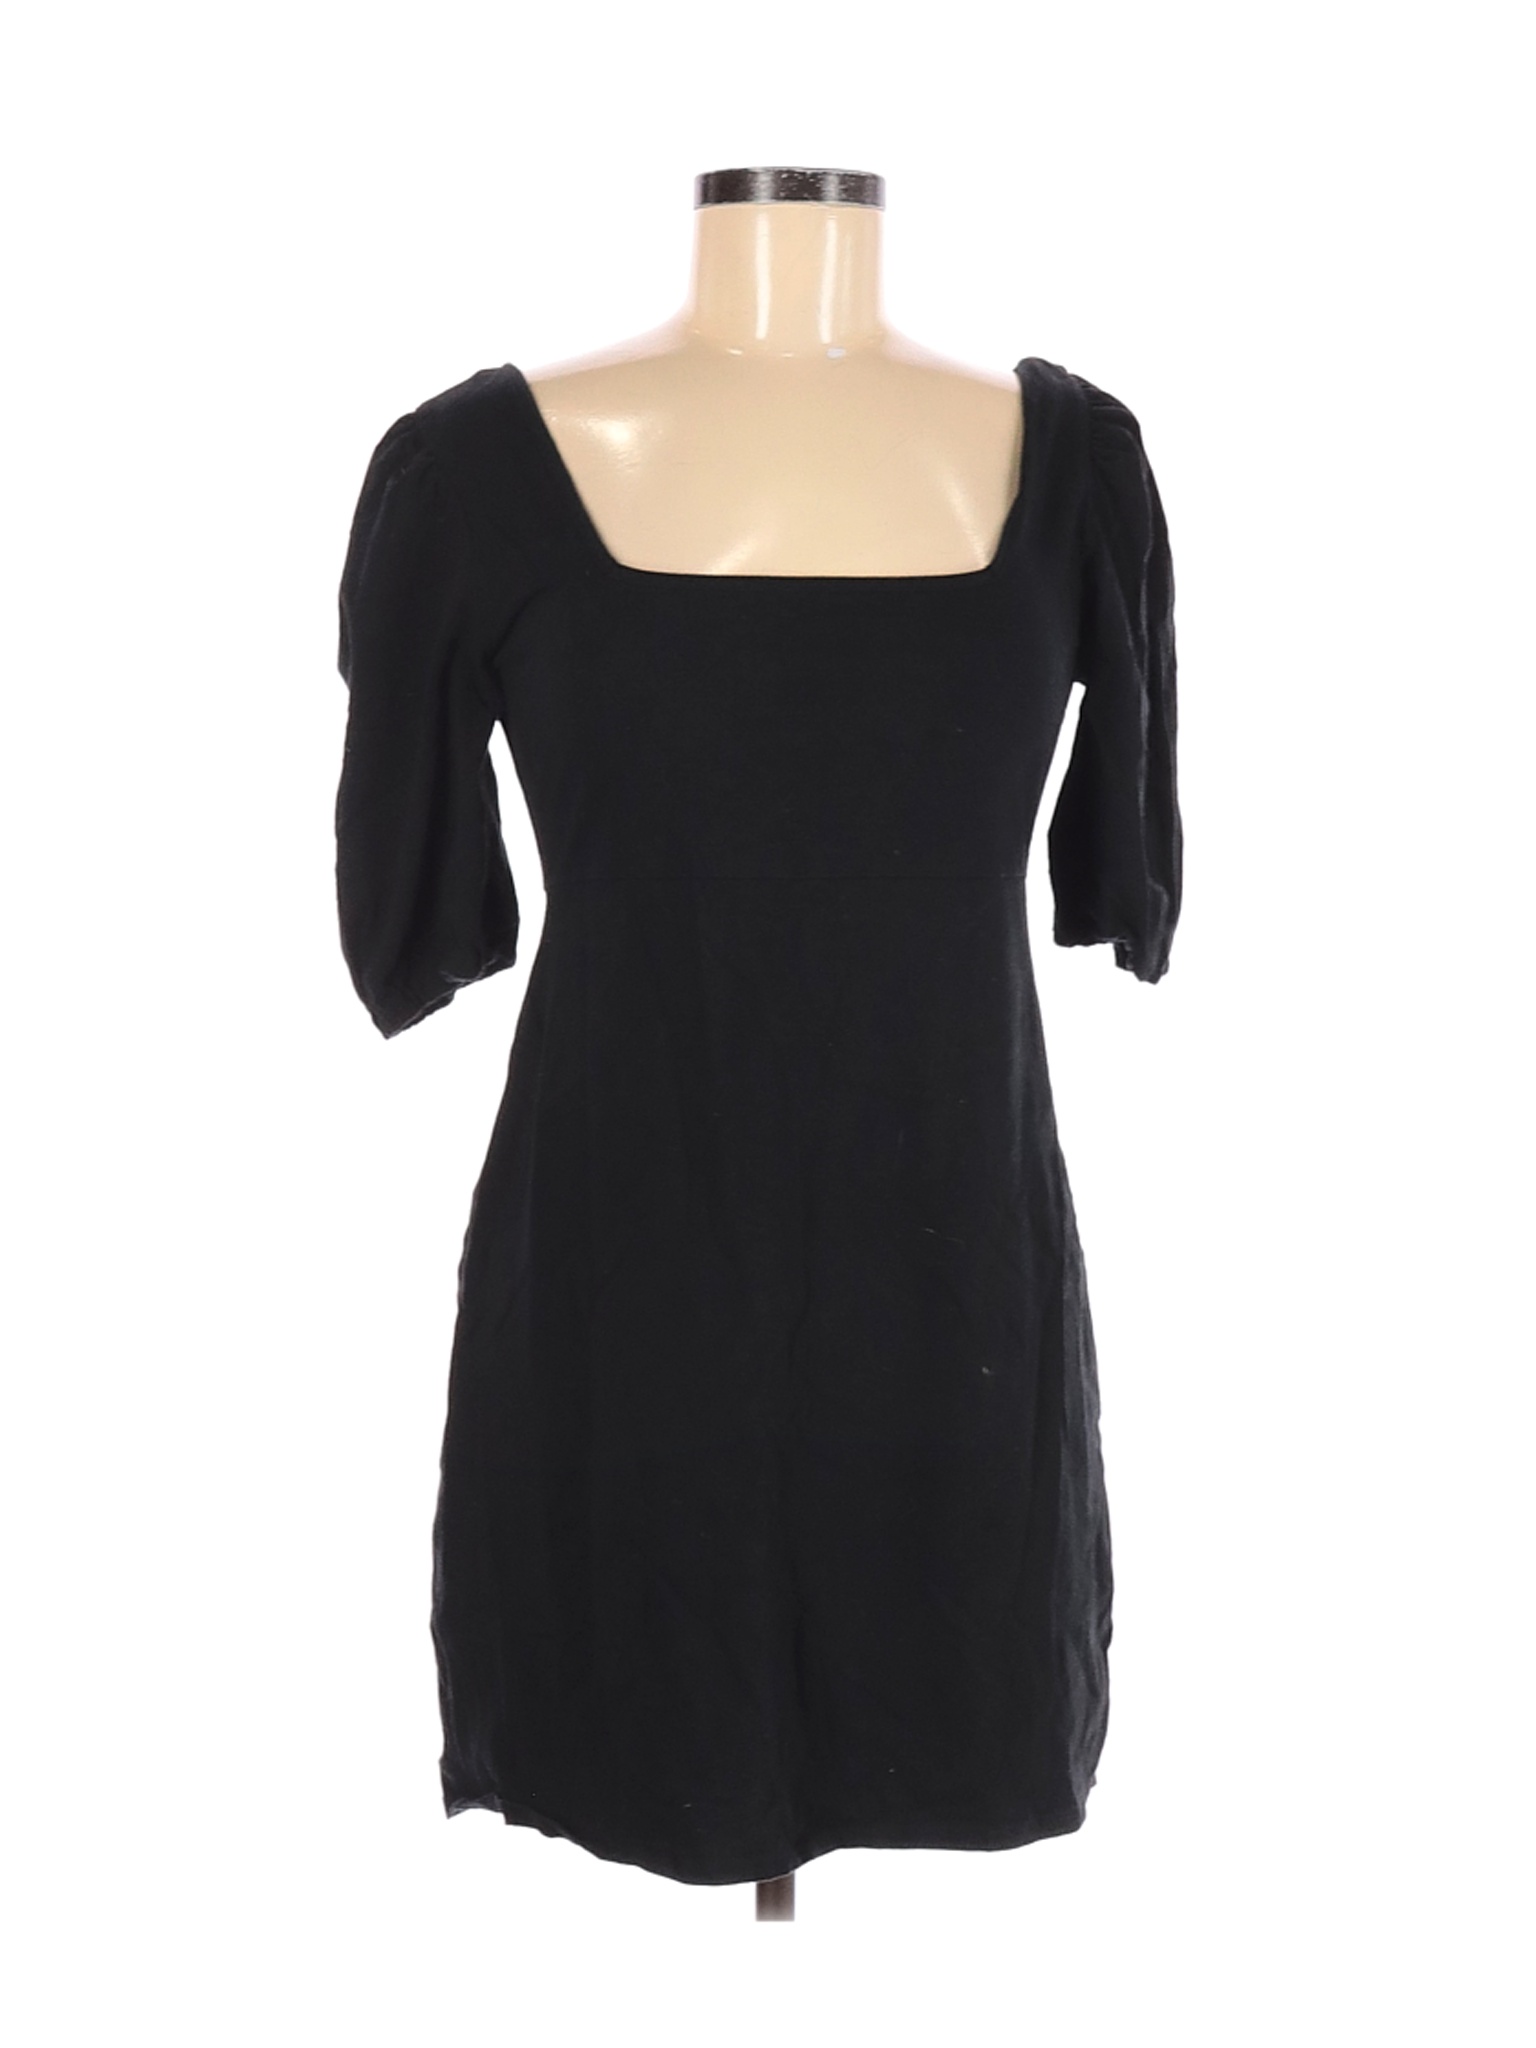 Wild Fable Women Black Casual Dress M | eBay